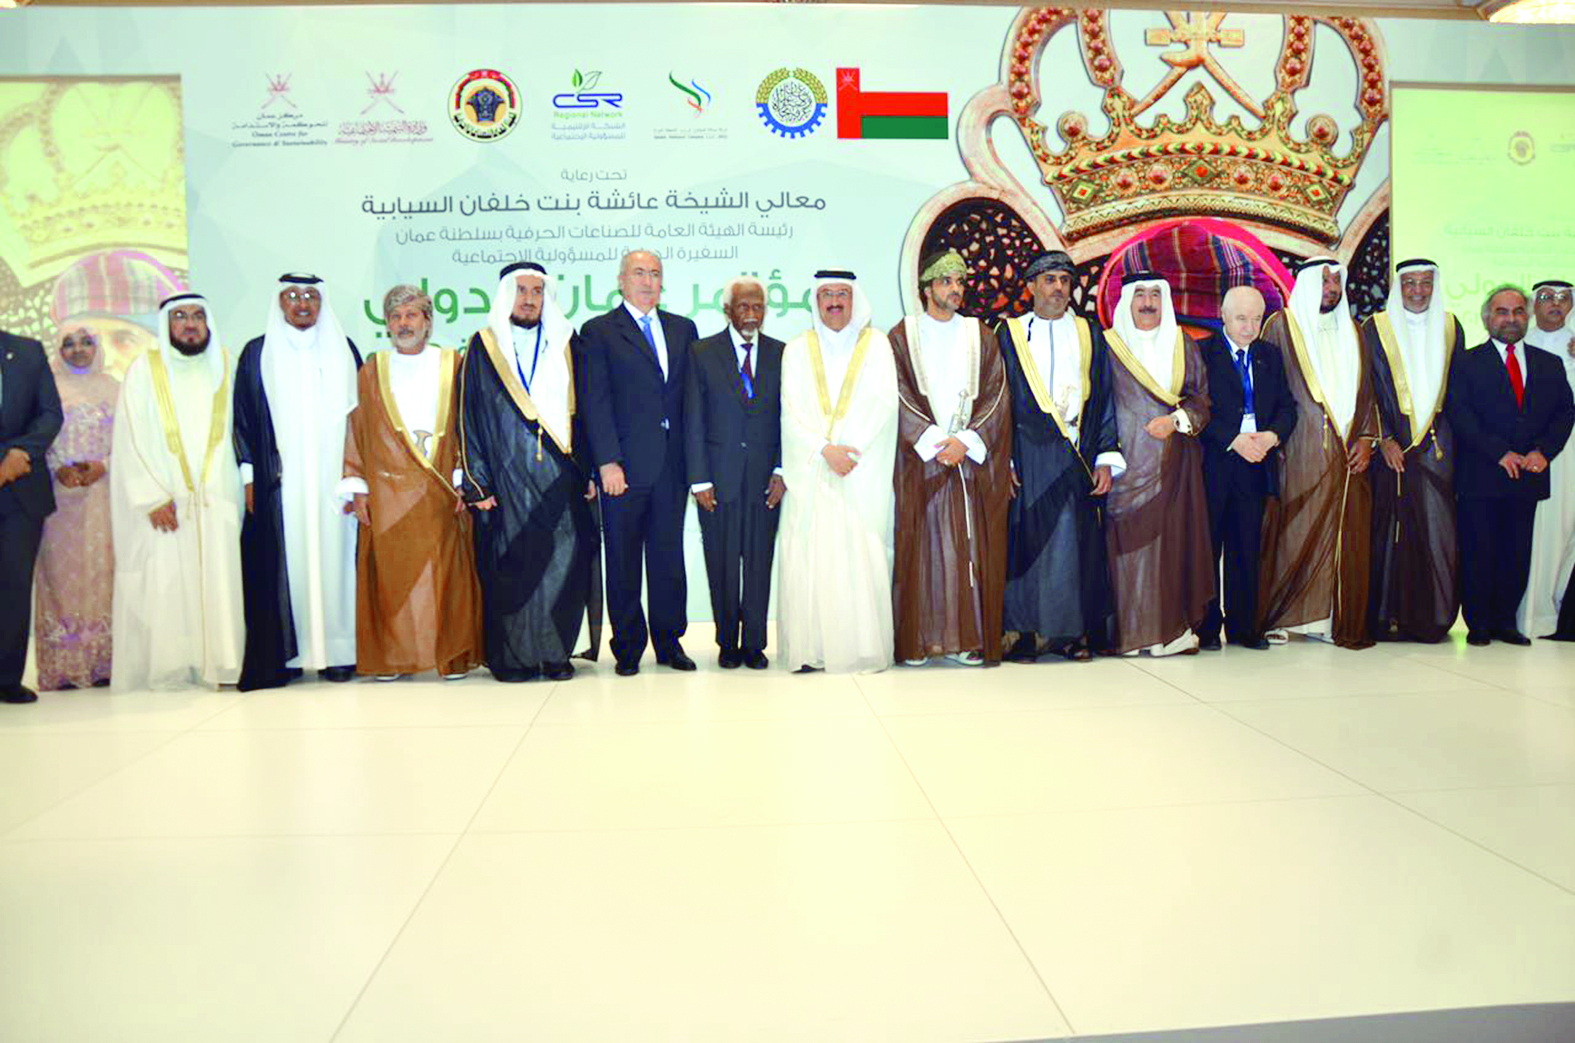 مؤتمر عمان الدولي للمسؤولية المجتمعية يركز على بناء شراكة مستدامة بين مختلف القطاعات